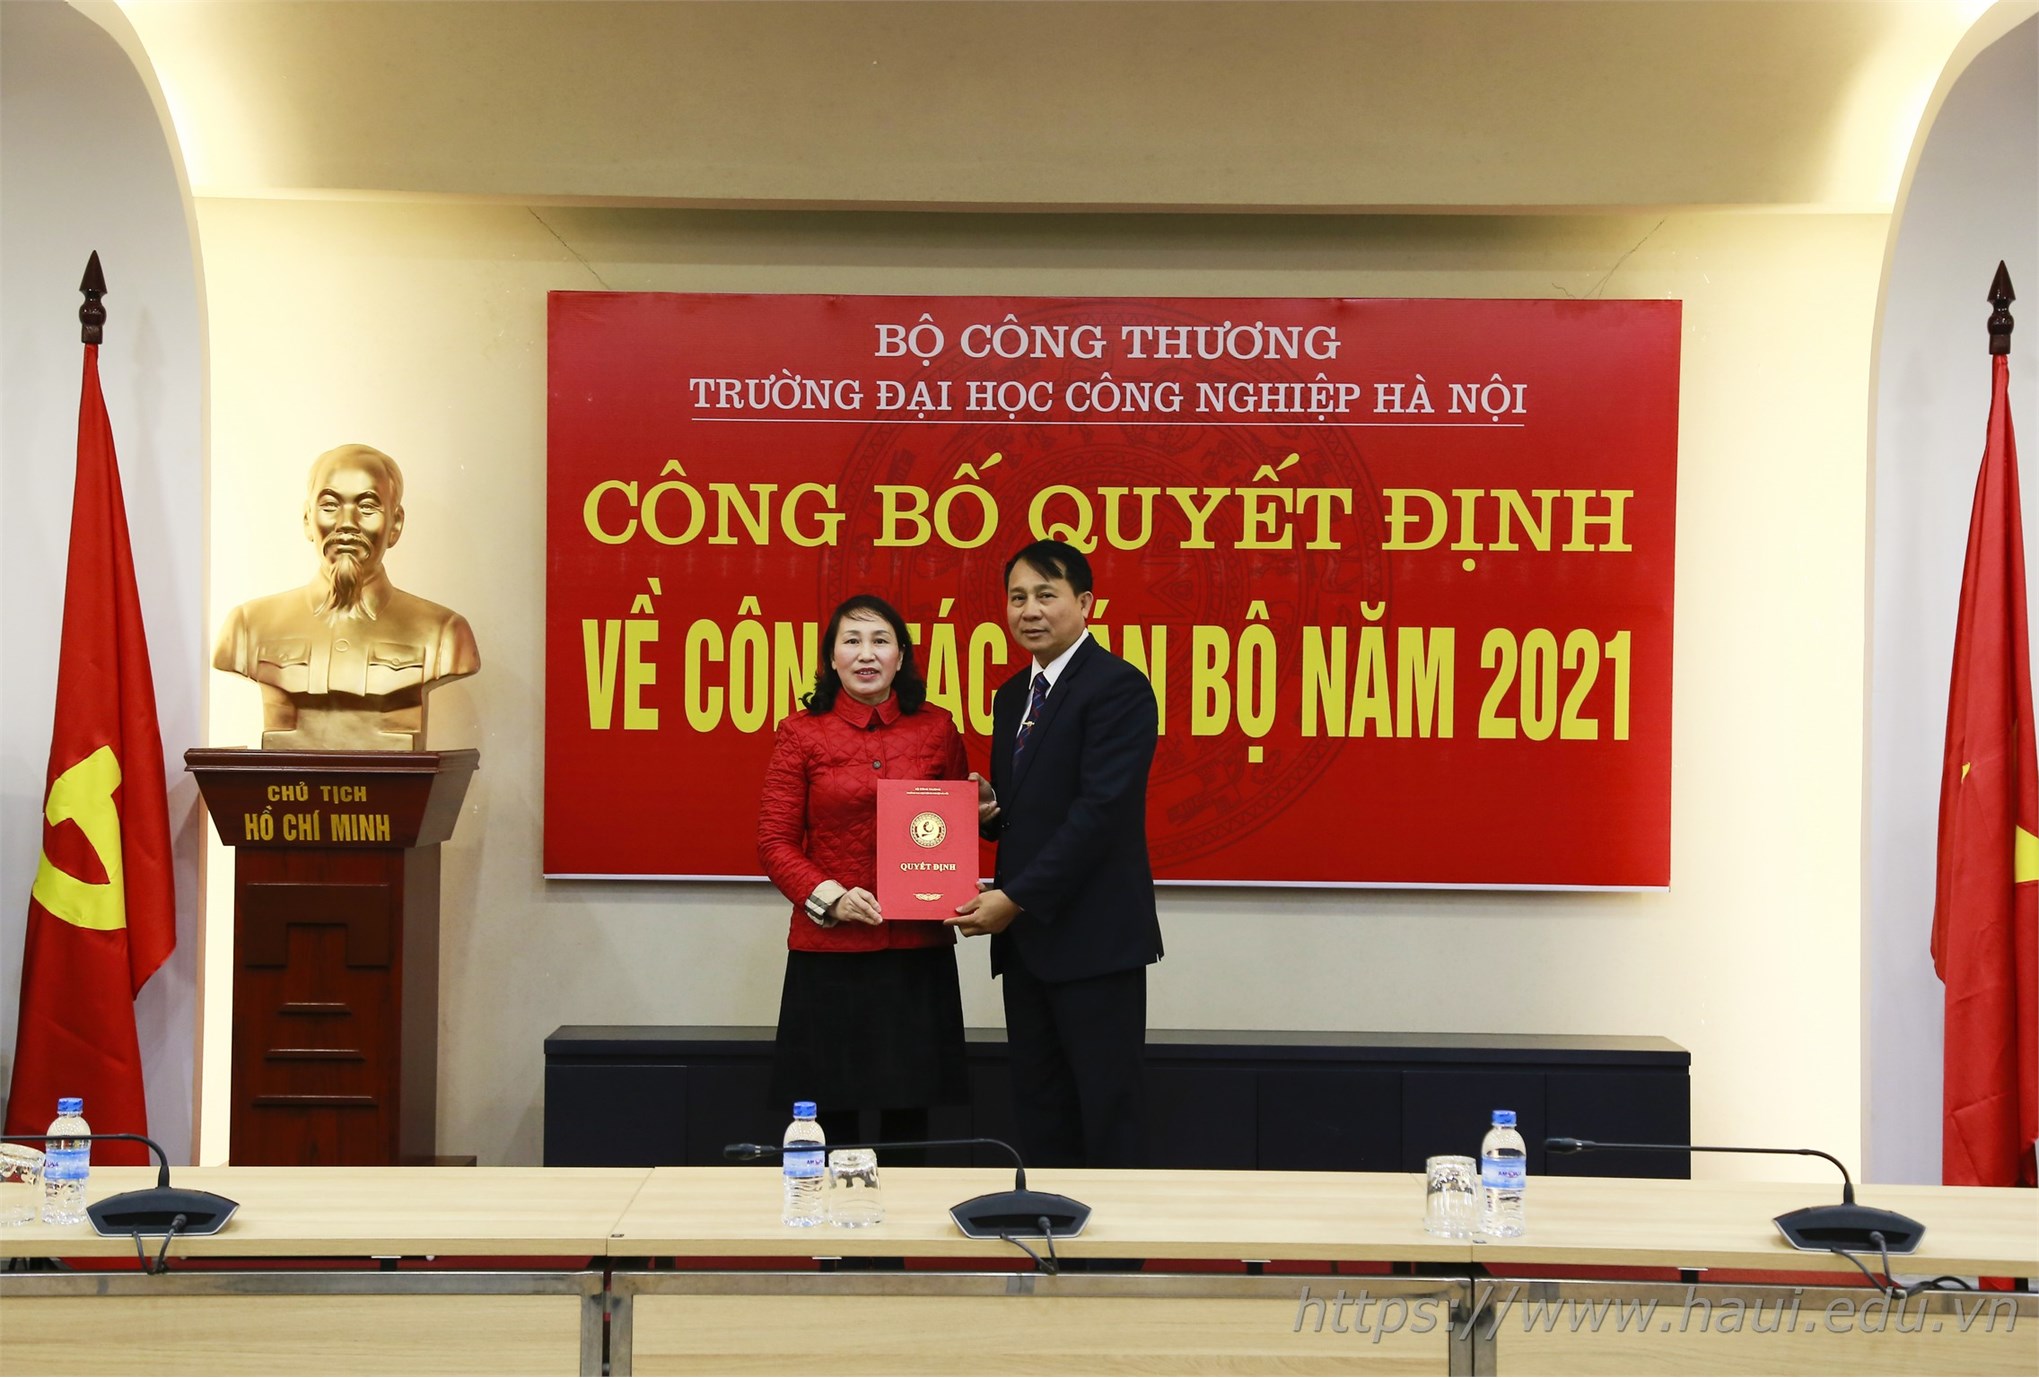 Đại học Công nghiệp Hà Nội công bố quyết định về công tác cán bộ